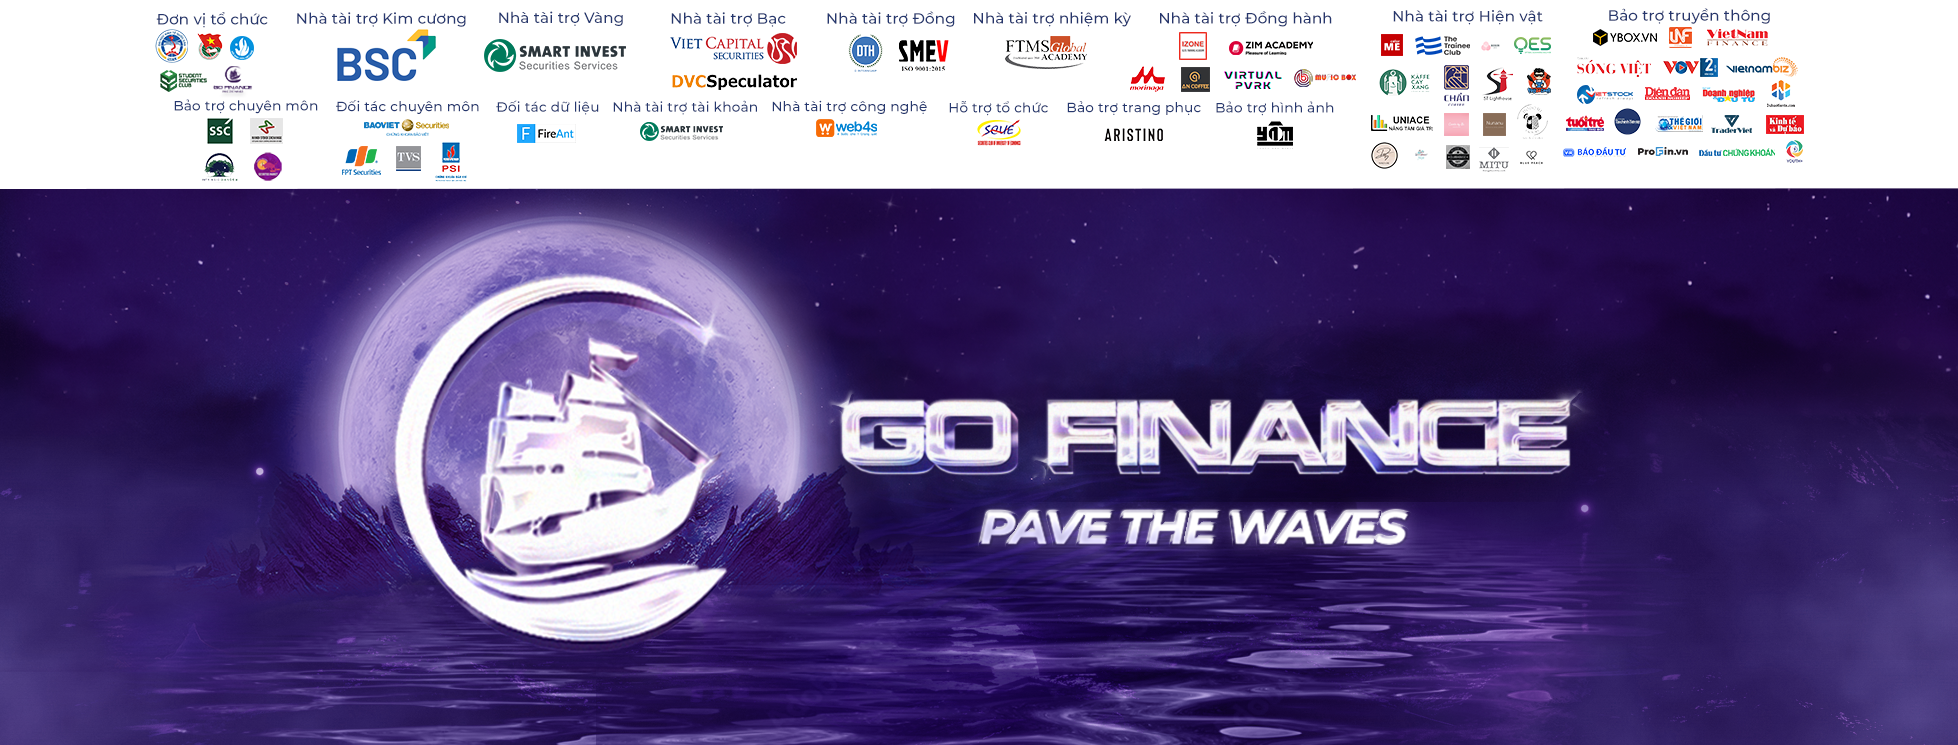 Go Finance 2023: Chính thức mở đơn và phát động cuộc thi Go Finance 2023